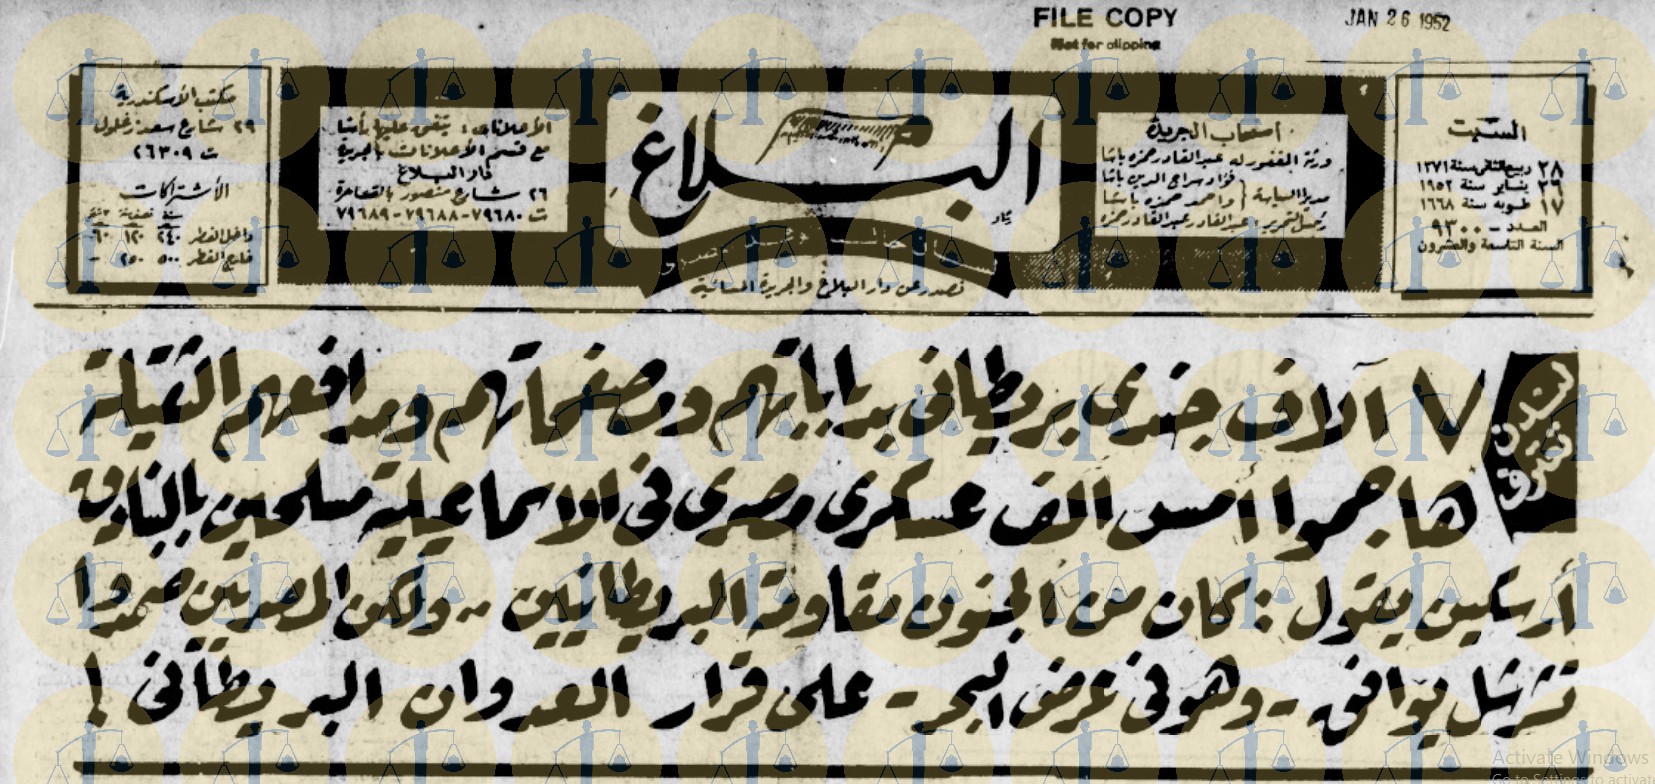 غلاف جريدة البلاغ عن معركة 25 يناير 1952